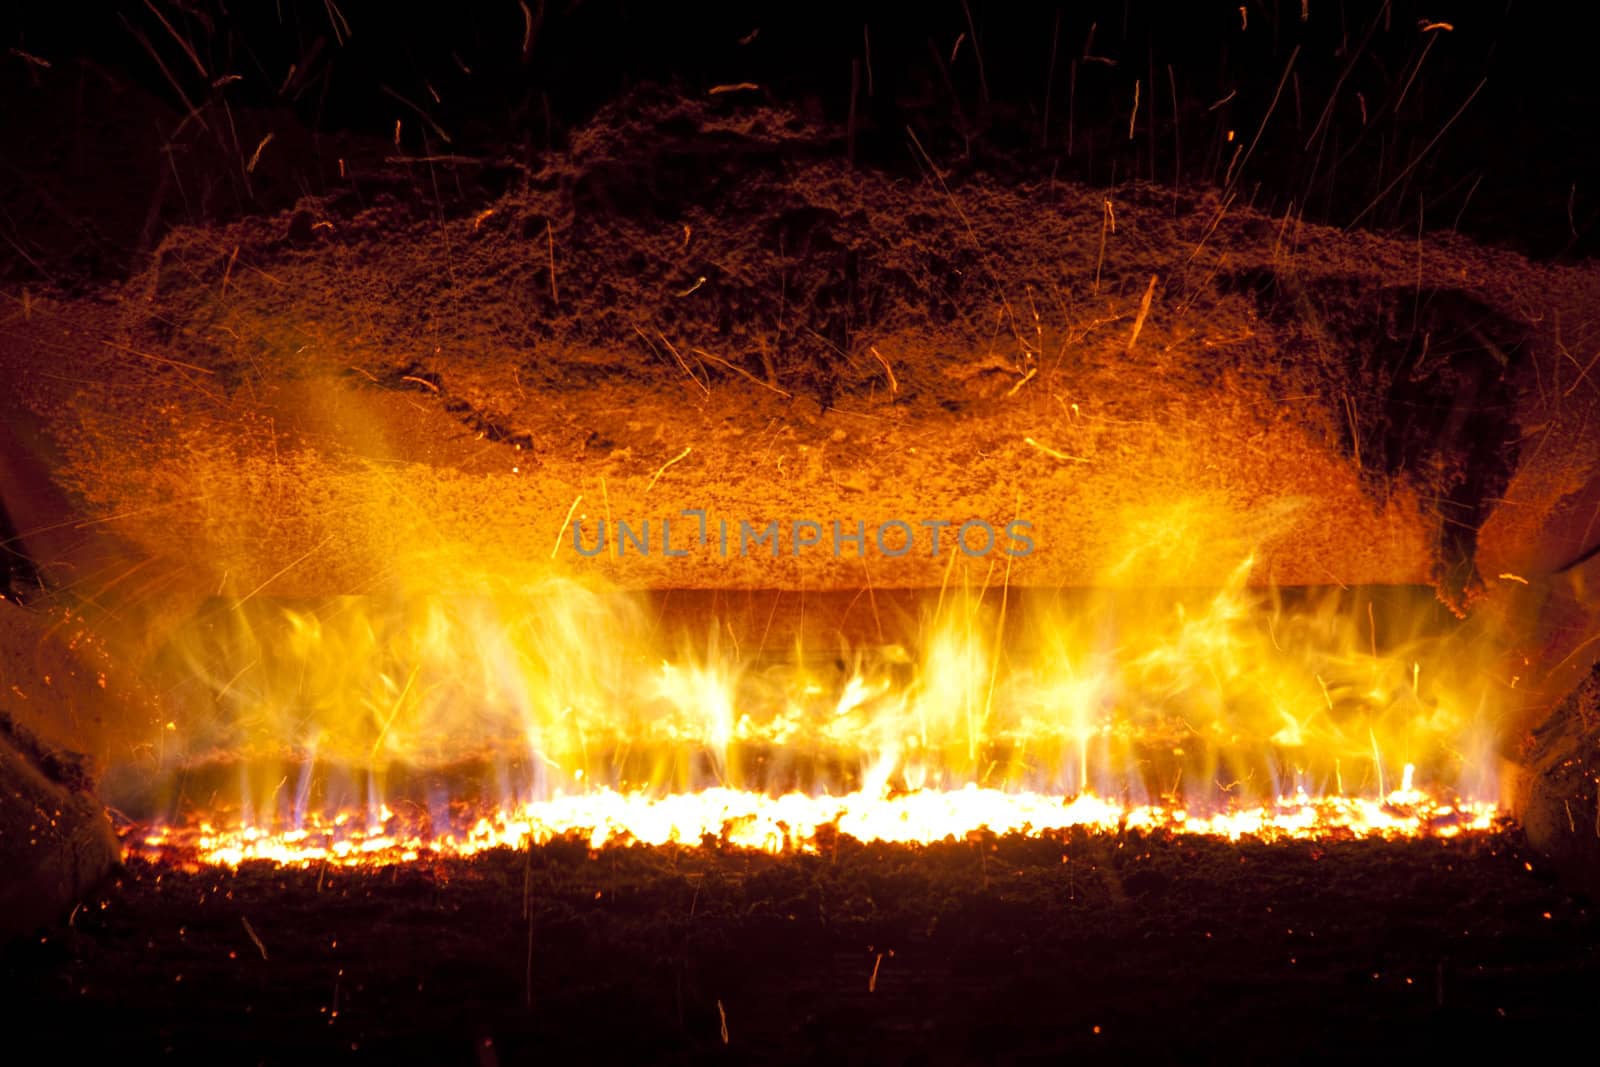 Fire in furnace by parys